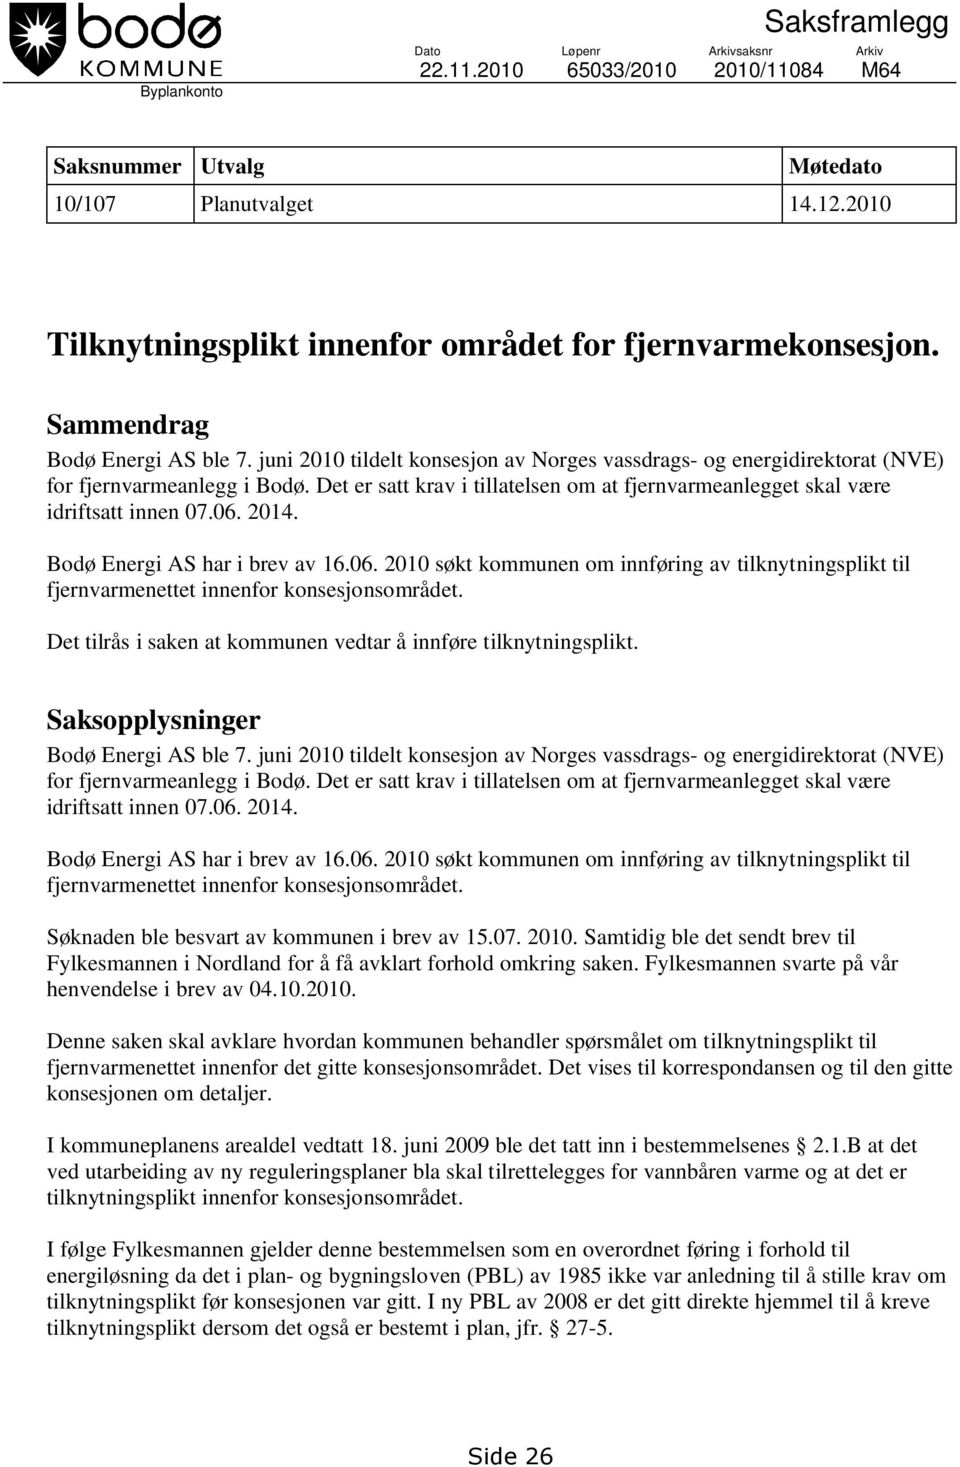 juni 2010 tildelt konsesjon av Norges vassdrags- og energidirektorat (NVE) for fjernvarmeanlegg i Bodø. Det er satt krav i tillatelsen om at fjernvarmeanlegget skal være idriftsatt innen 07.06. 2014.